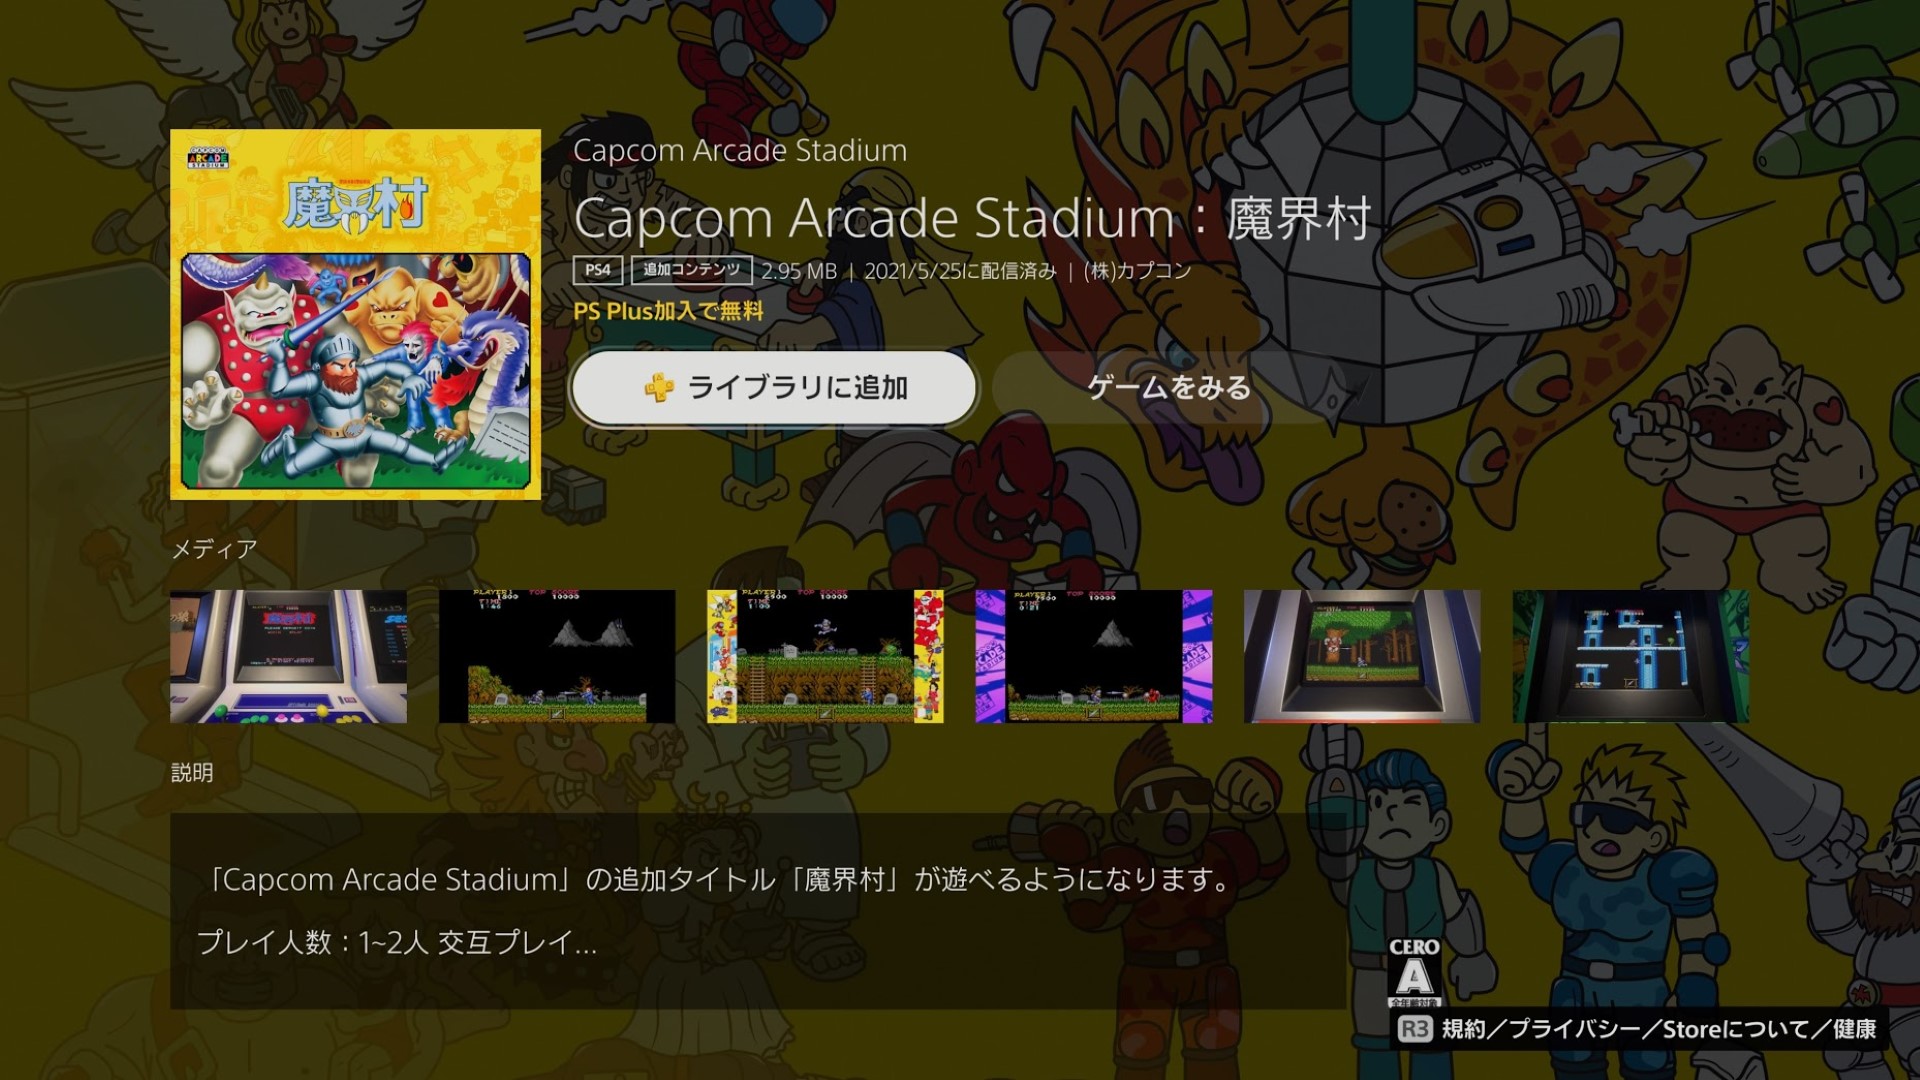 カプコン アーケードスタジアム 魔界村 Ps Plus限定で無料 6月1日まで Xboxとsteamは半額セール Engadget 日本版